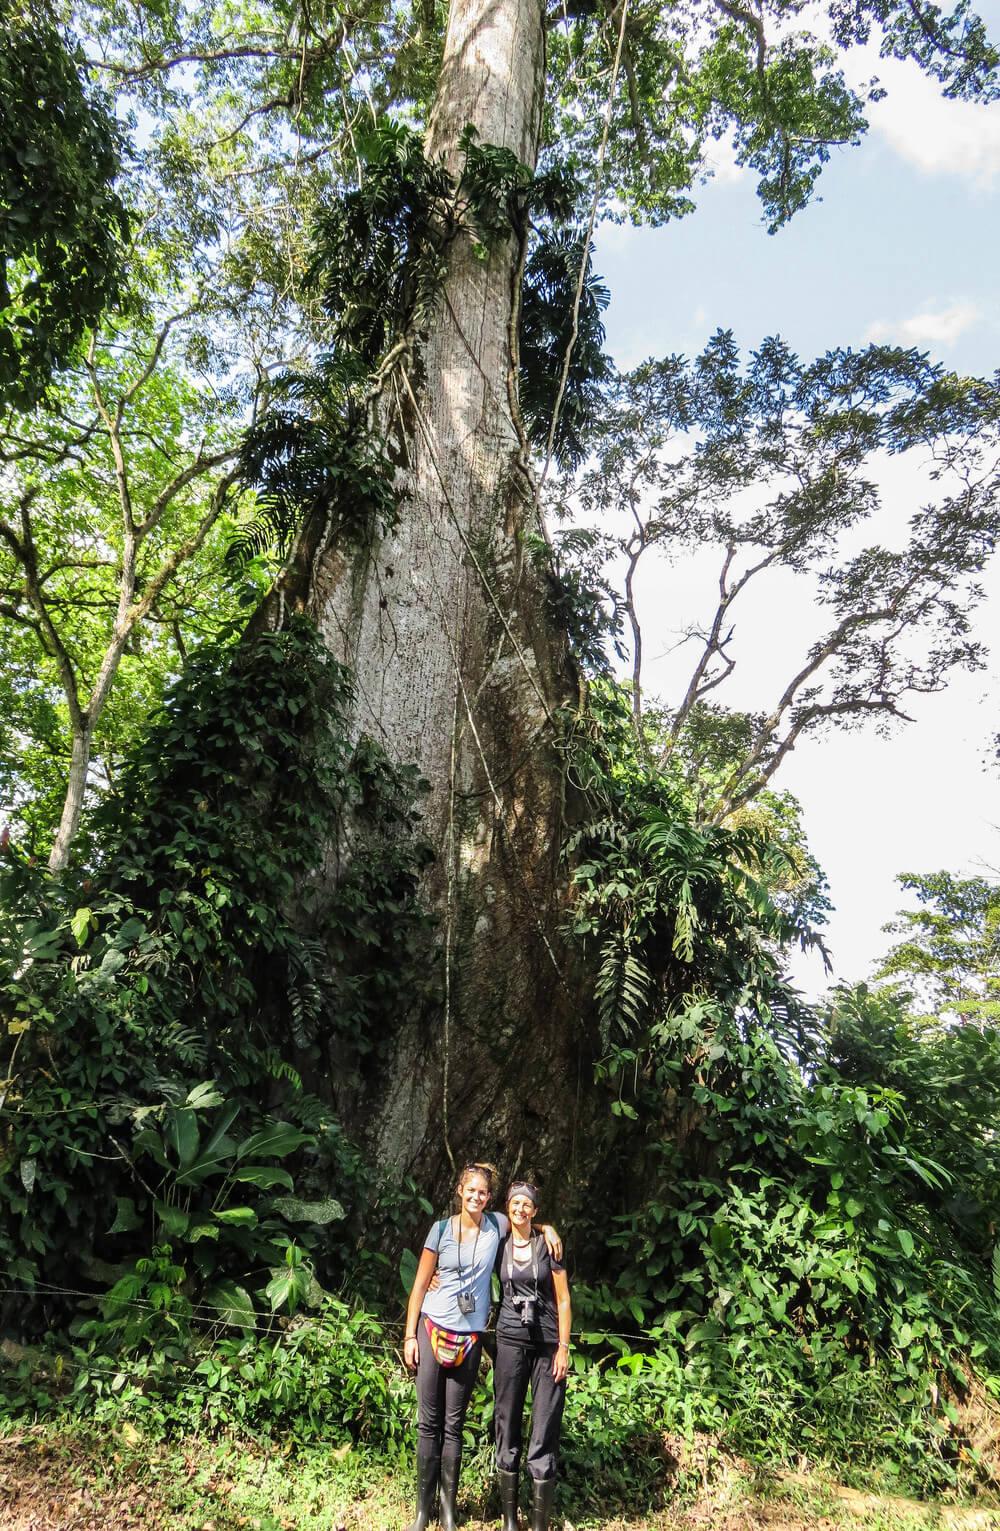 The 500 year old tree at Los Guatuzos